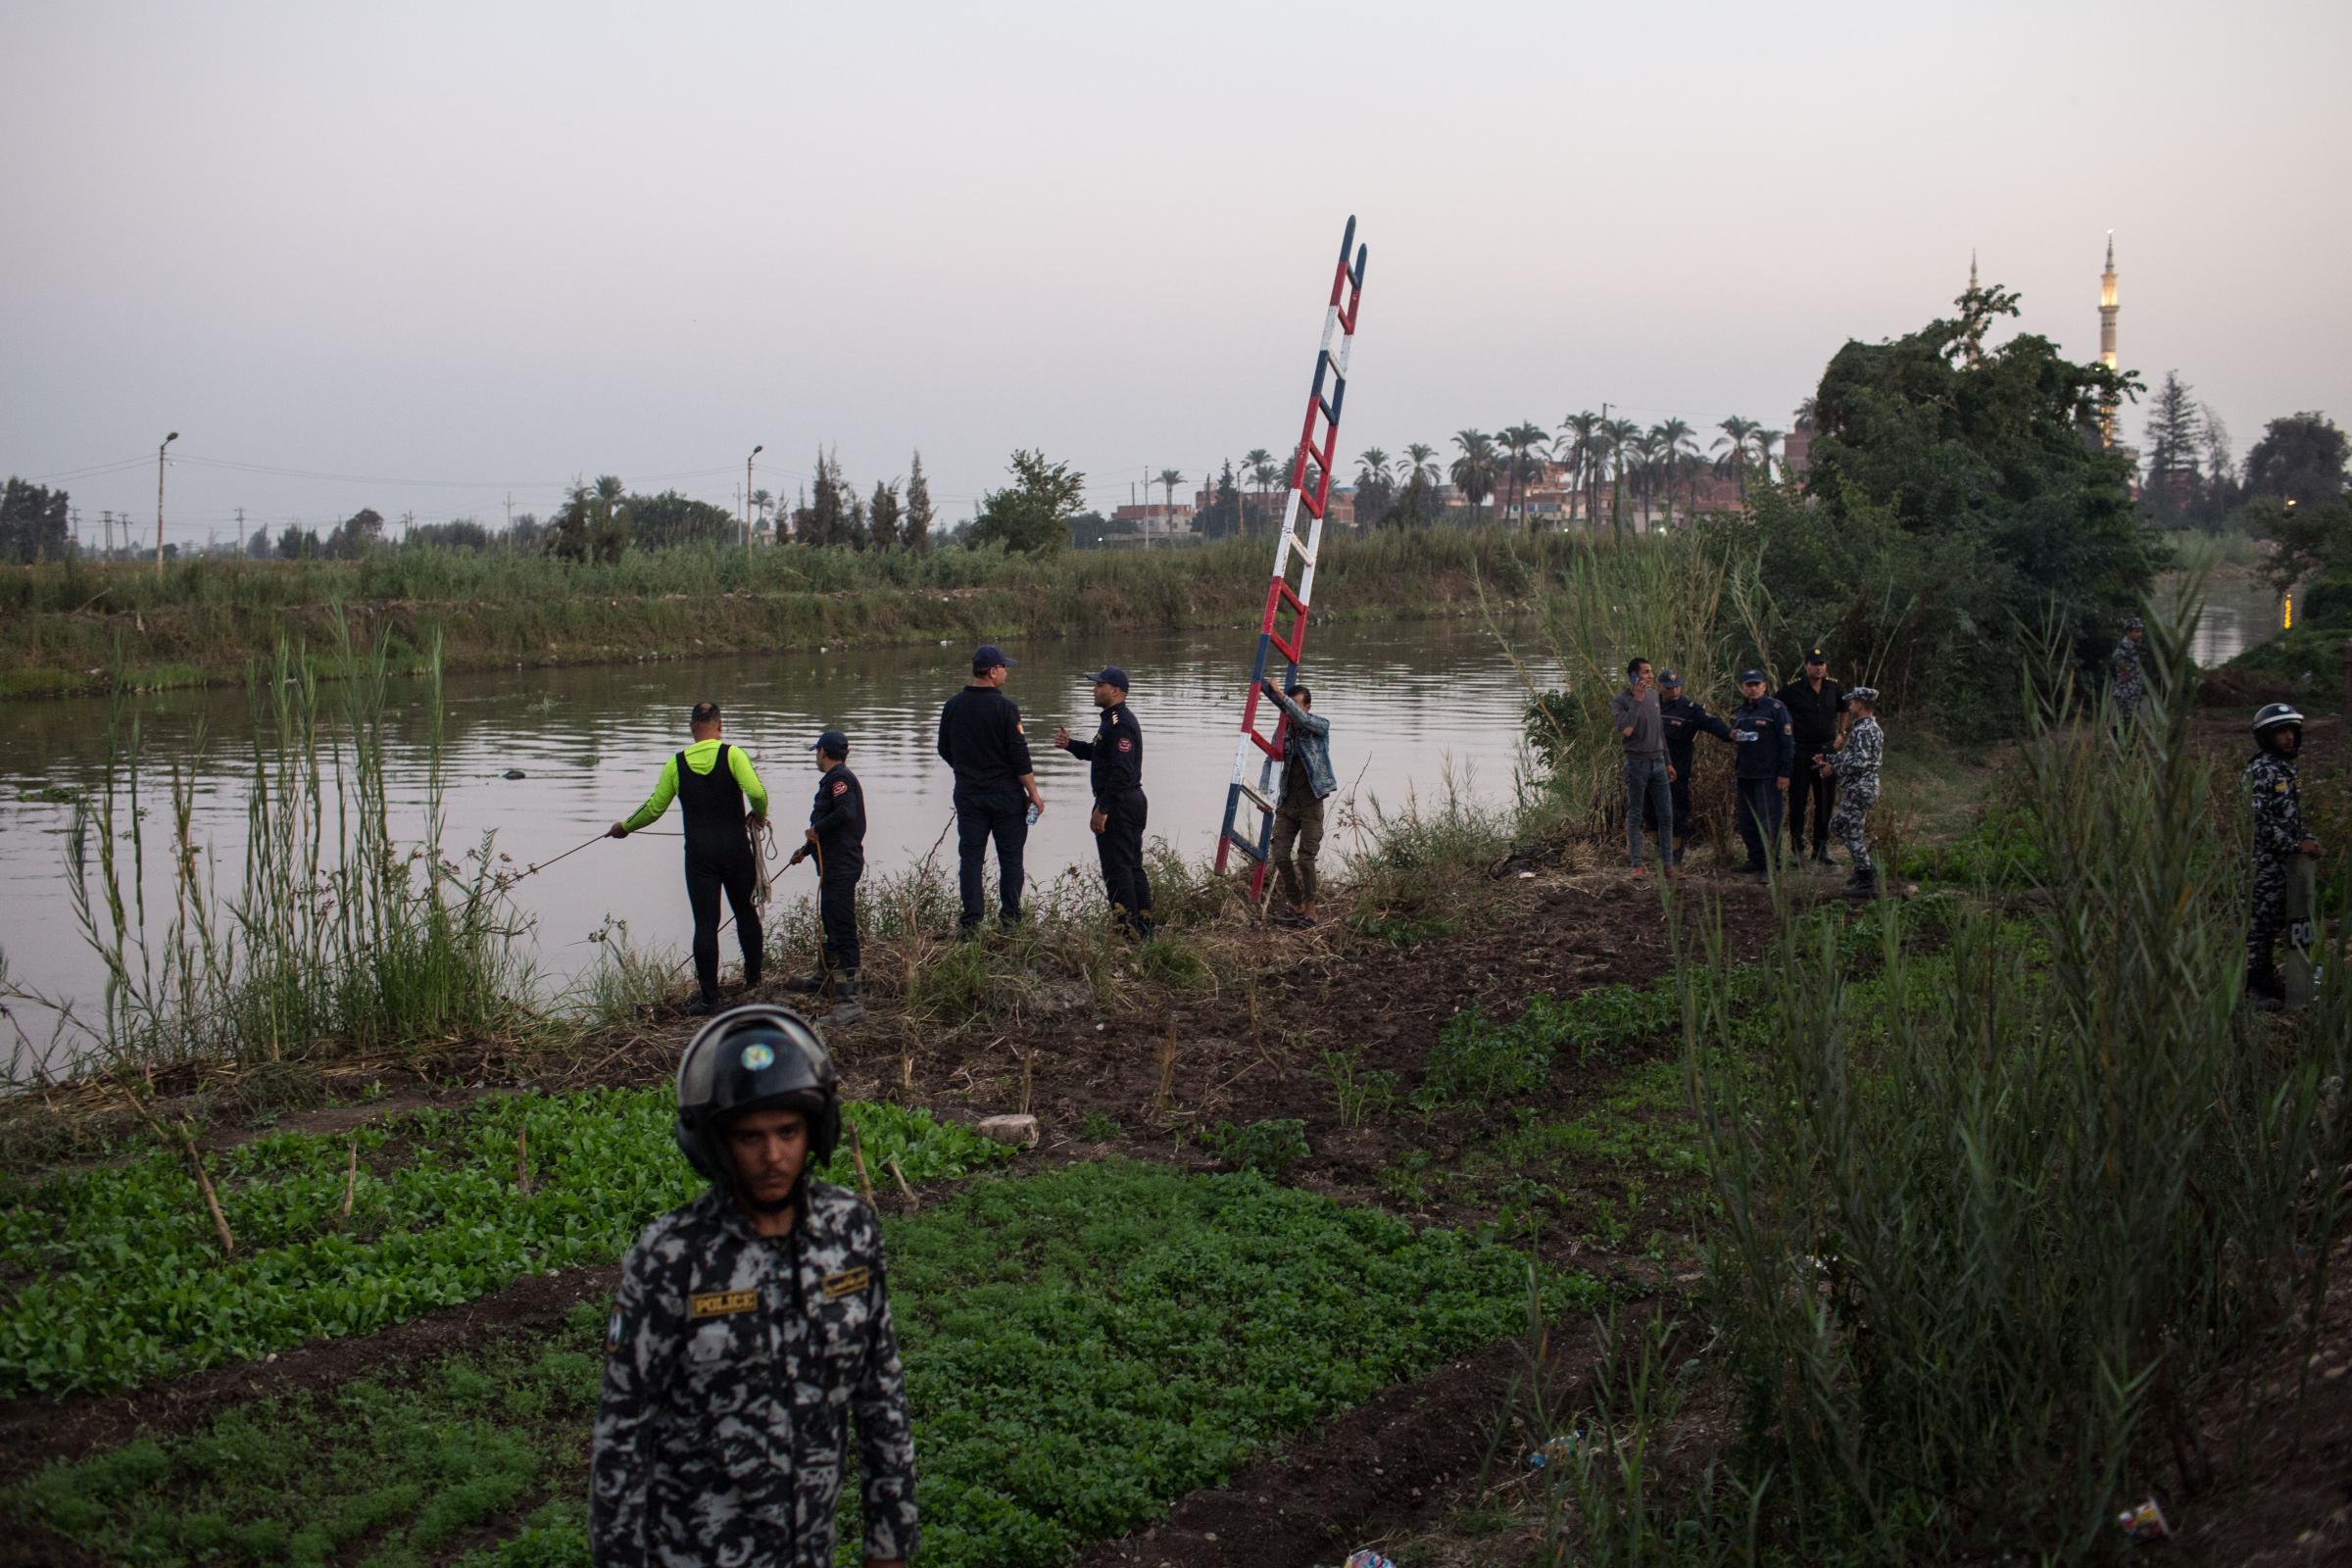 Minibus falls into canal in Egypt’s Nile Delta, killing 21 - 